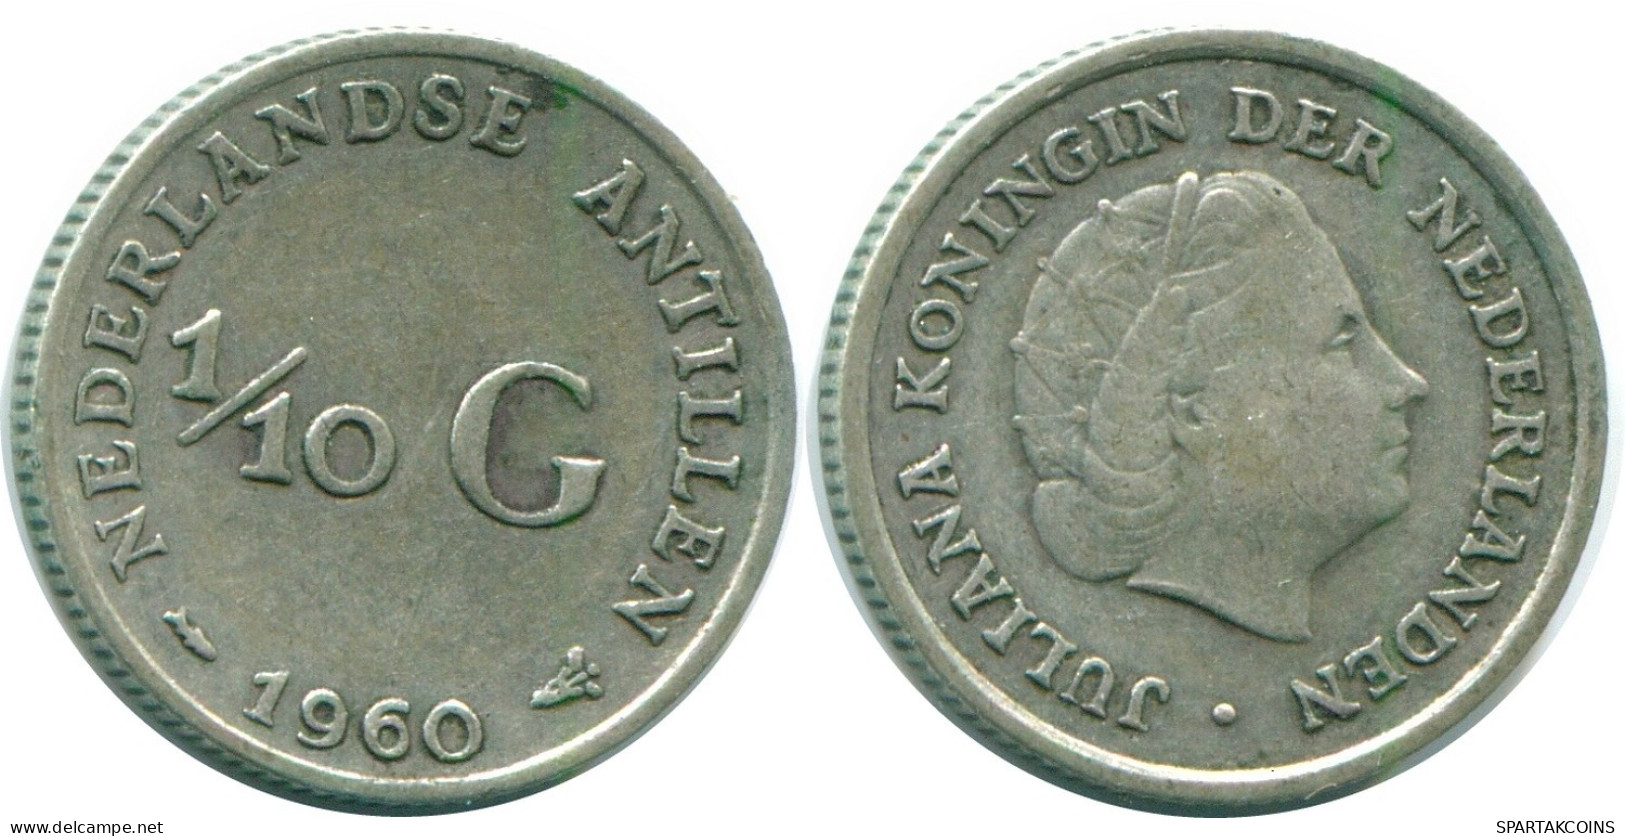 1/10 GULDEN 1960 NIEDERLÄNDISCHE ANTILLEN SILBER Koloniale Münze #NL12331.3.D.A - Nederlandse Antillen